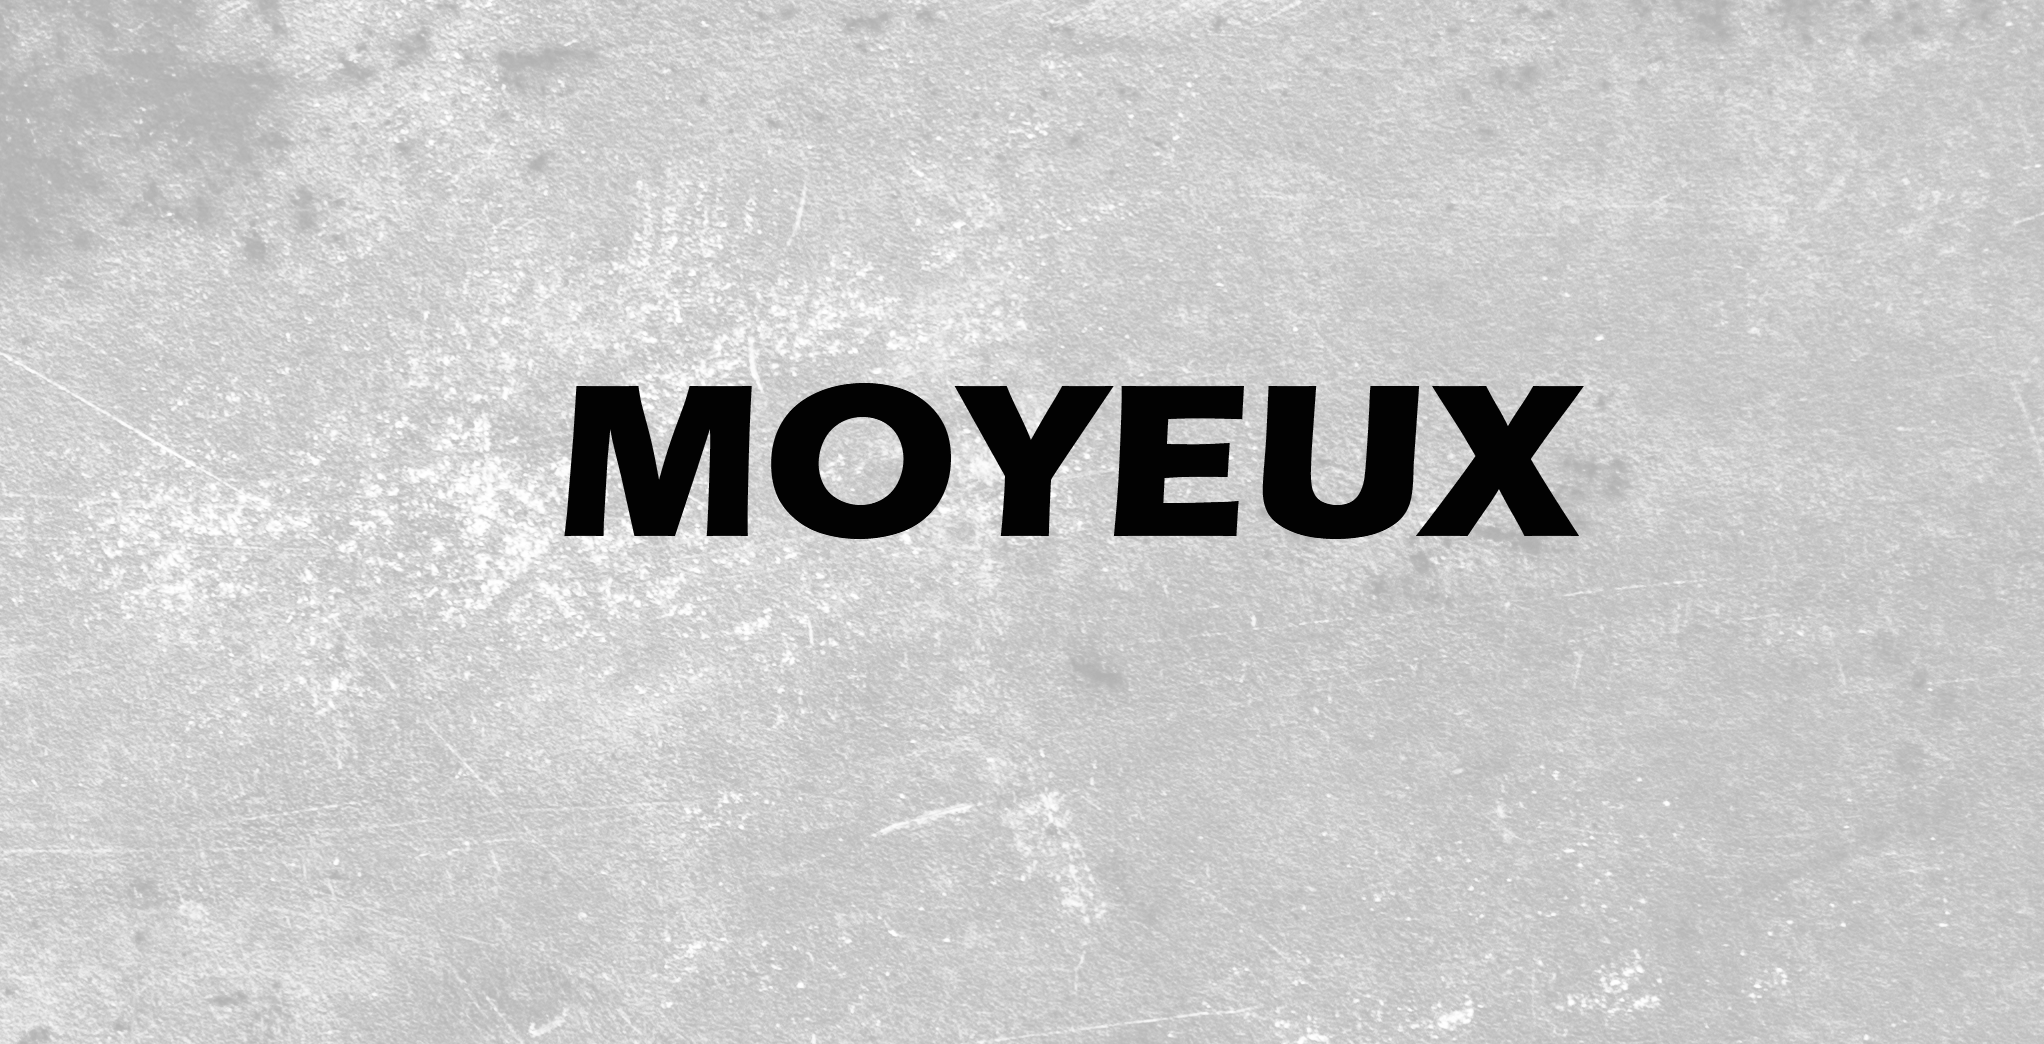 Moyeux